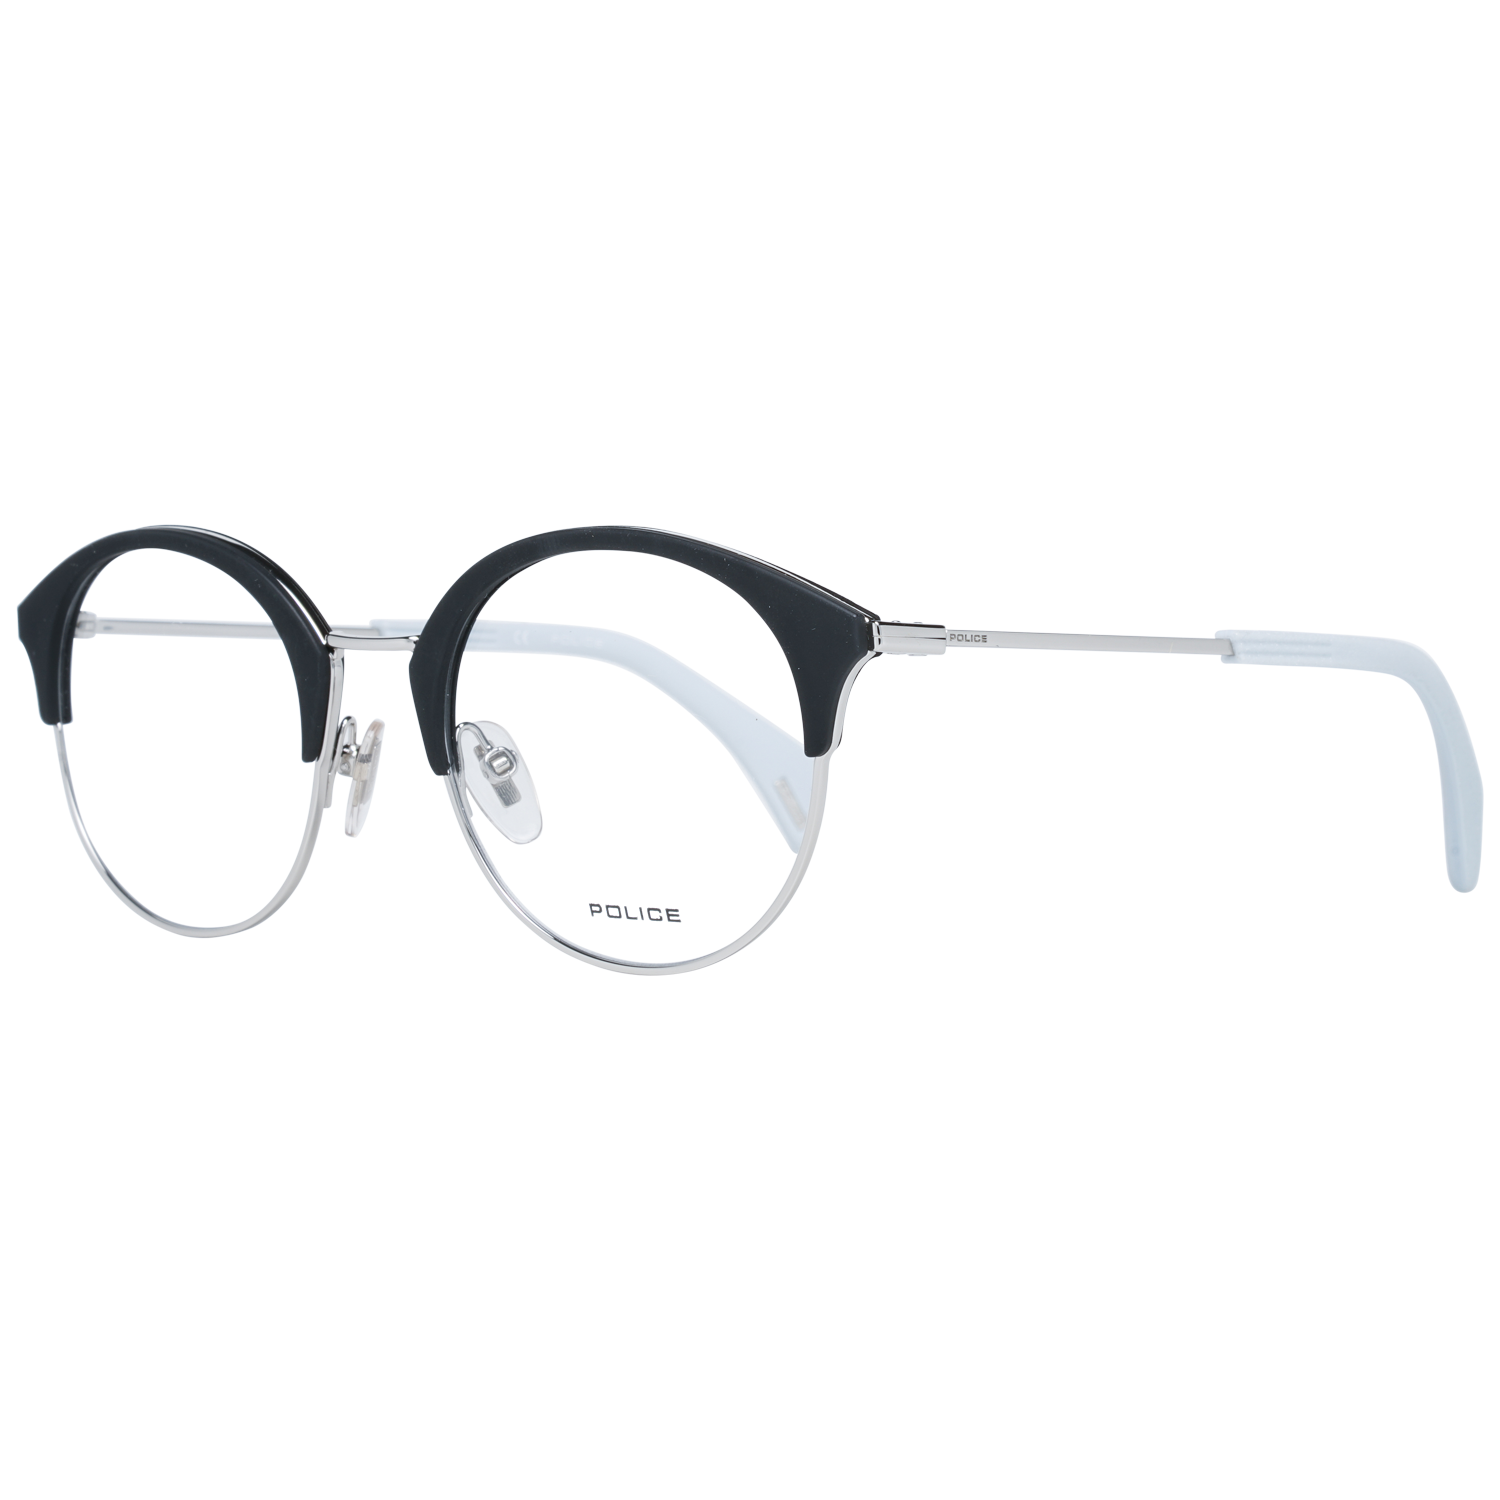 Police Frames Police Glasses Frames VPL730 579Y 50 Eyeglasses Eyewear UK USA Australia 